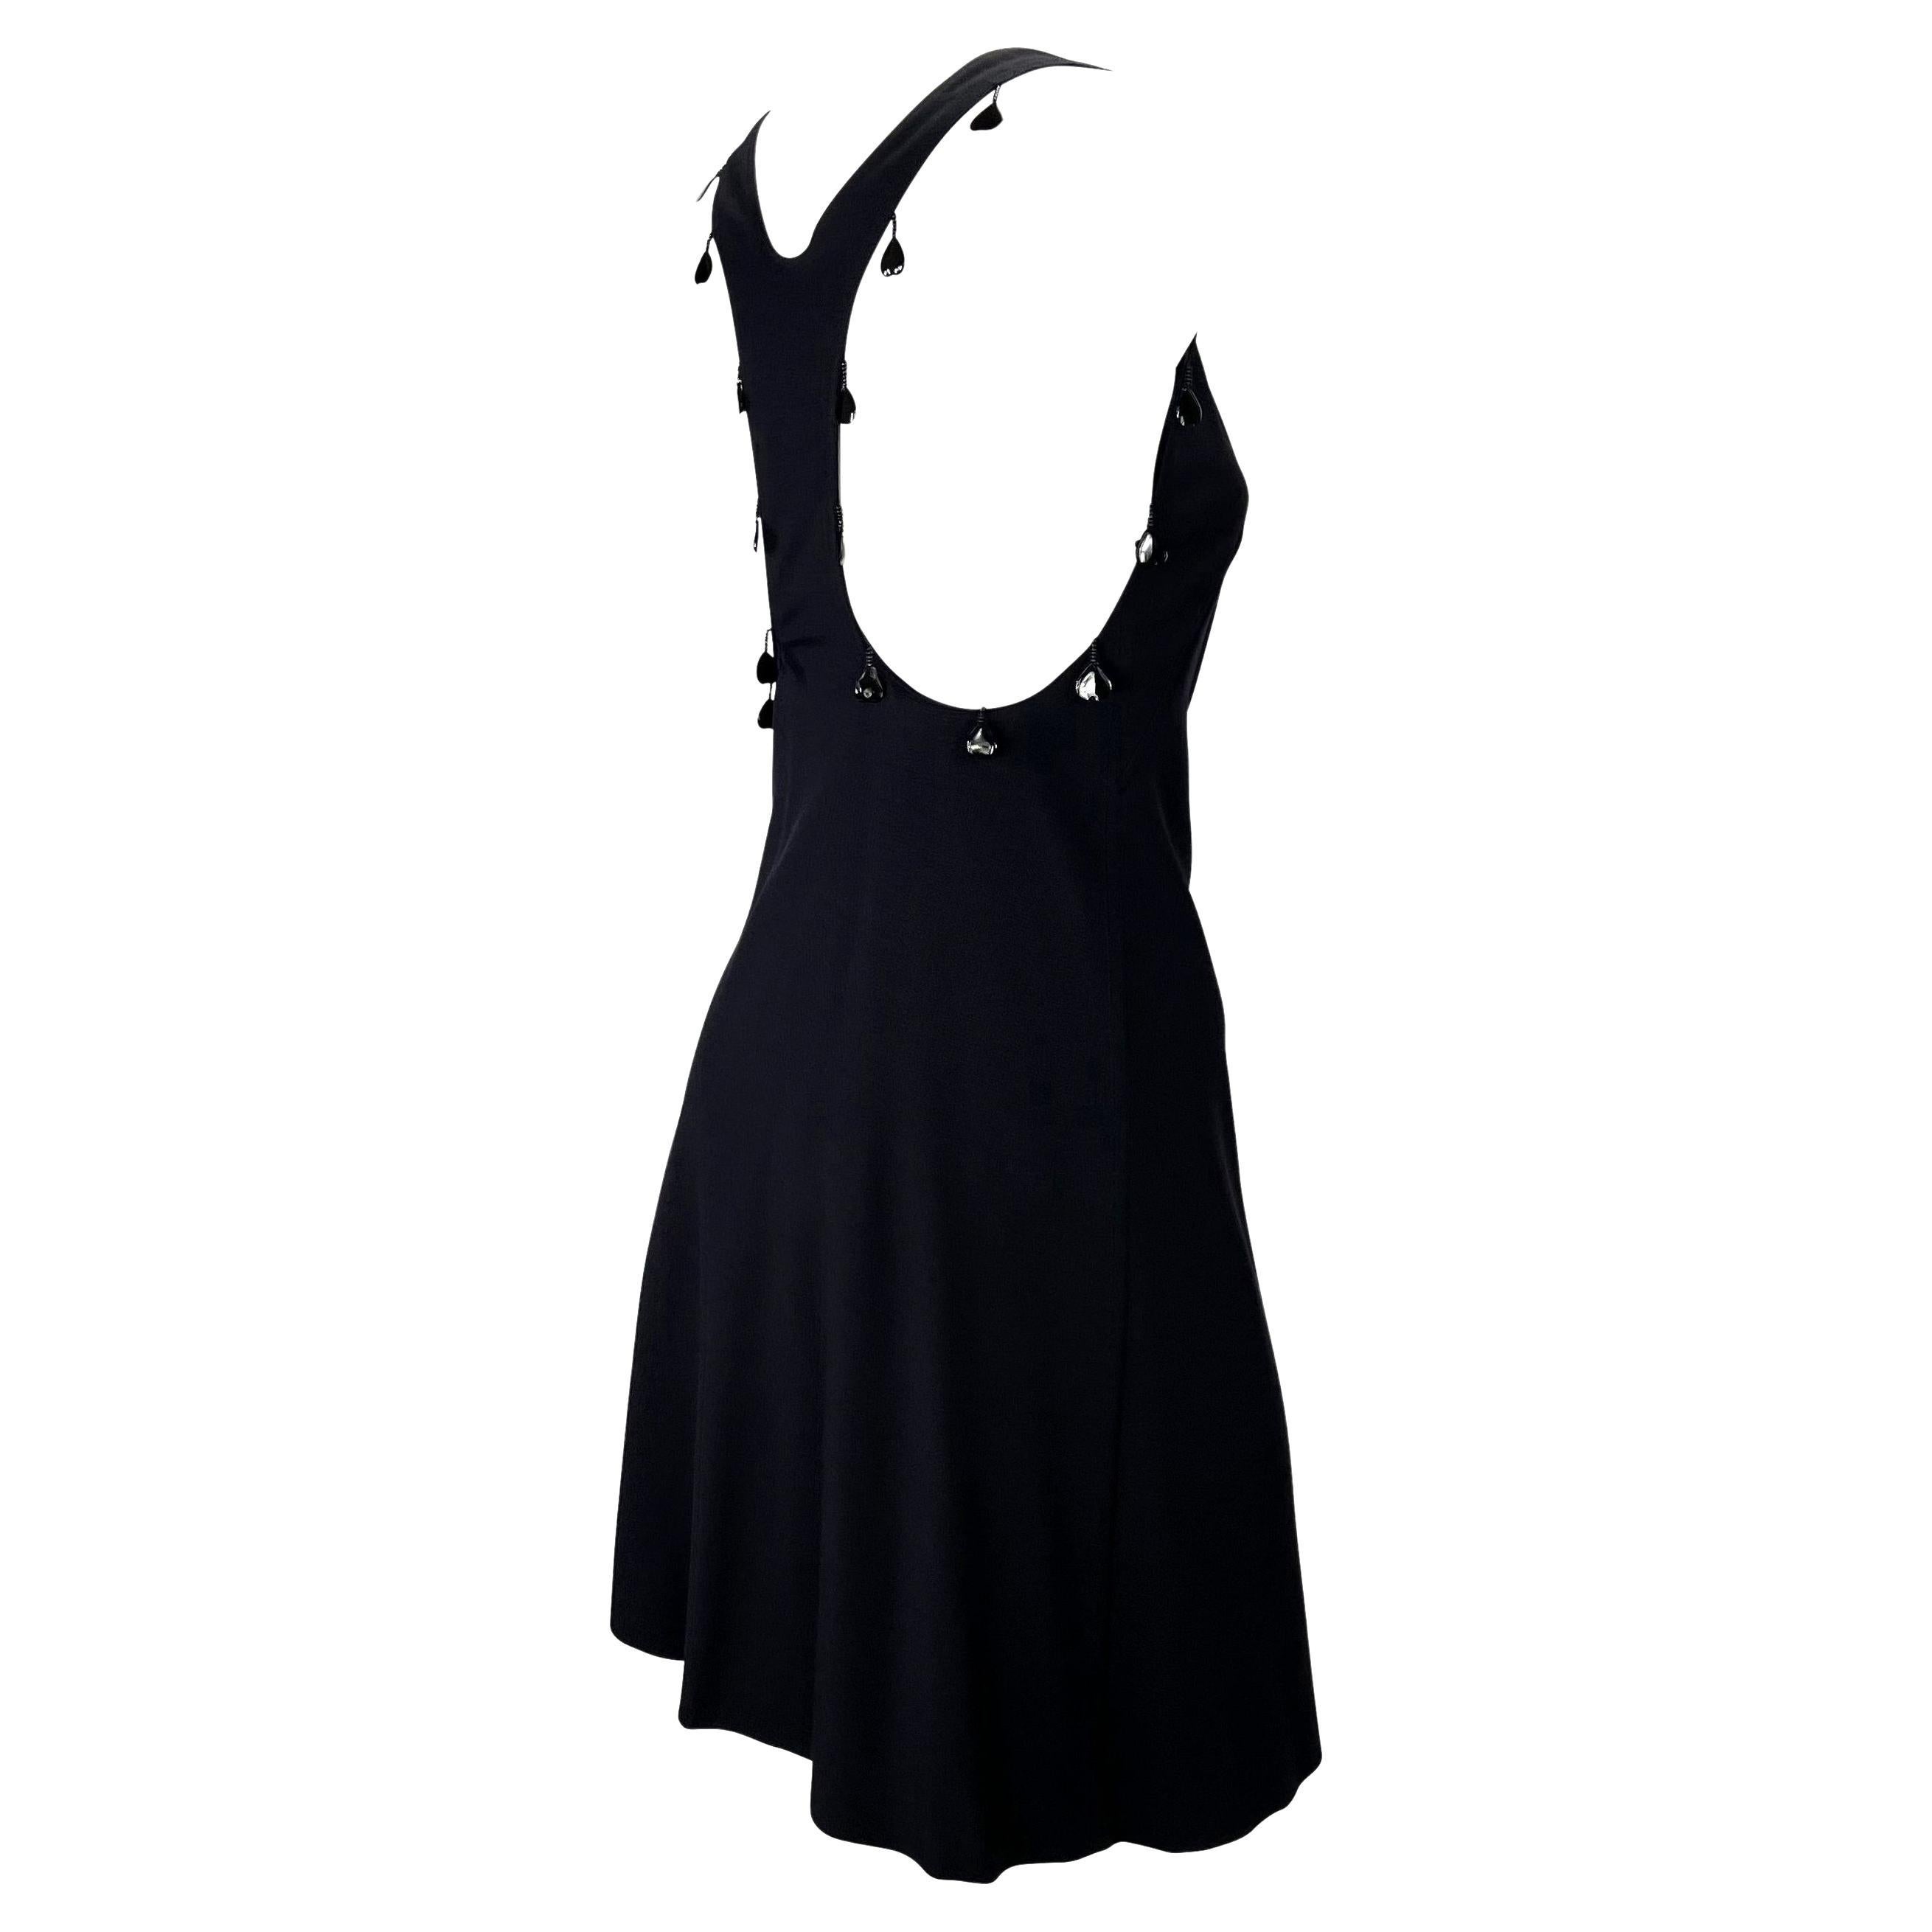 Présentation d'une robe noire en maille dos nageur Chloé, dessinée par Phoebe Philo. Issue de la collection printemps/été 2004, cette magnifique petite robe noire présente une encolure dégagée, un dos nageur, une jupe évasée et est agrémentée de